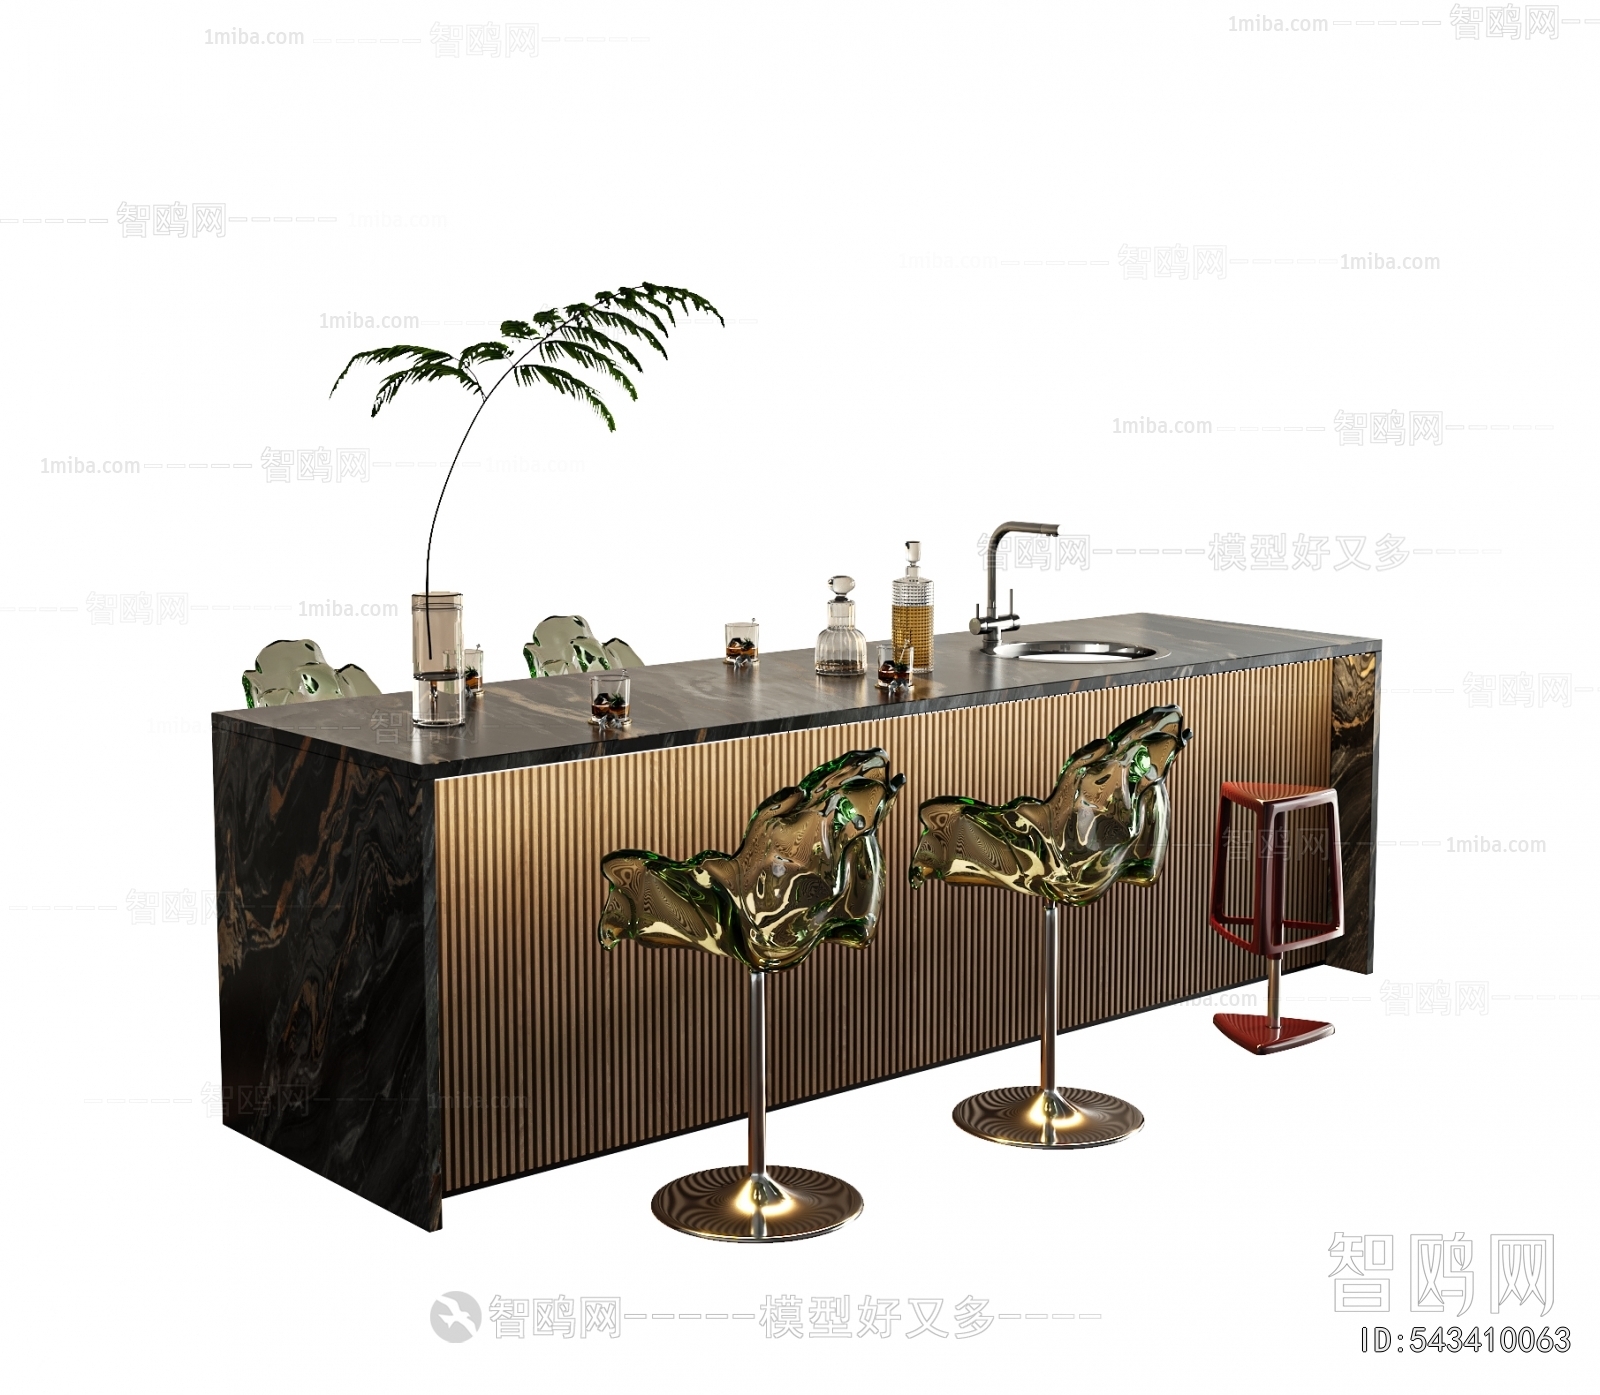 Modern Counter Bar